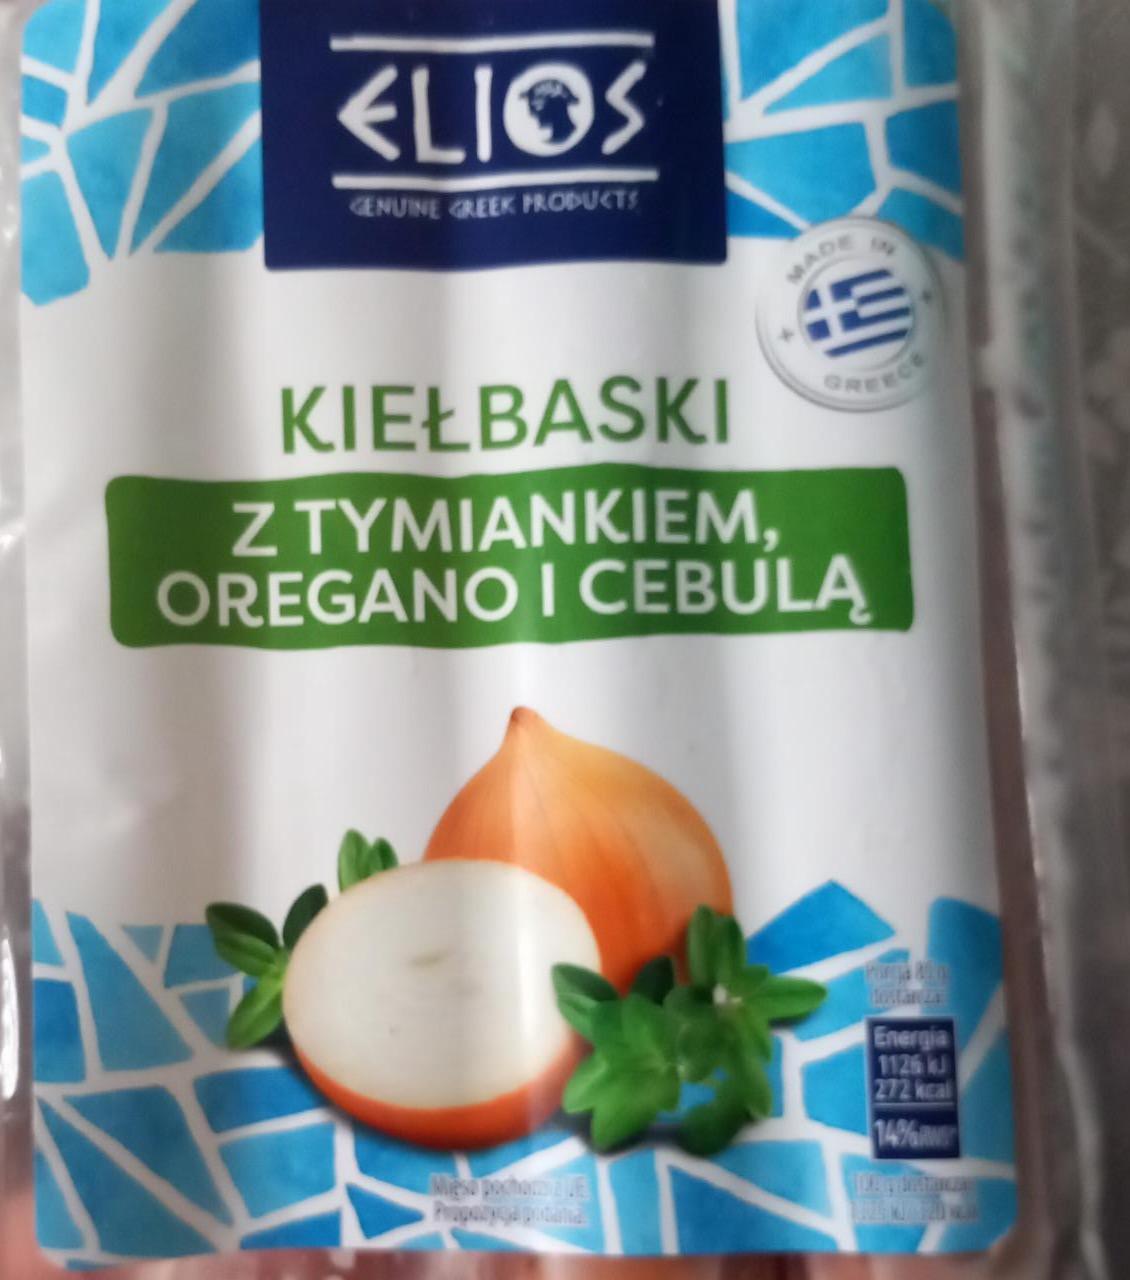 Zdjęcia - Kiełbaski z tymiankiem oregano i cebulą Elios